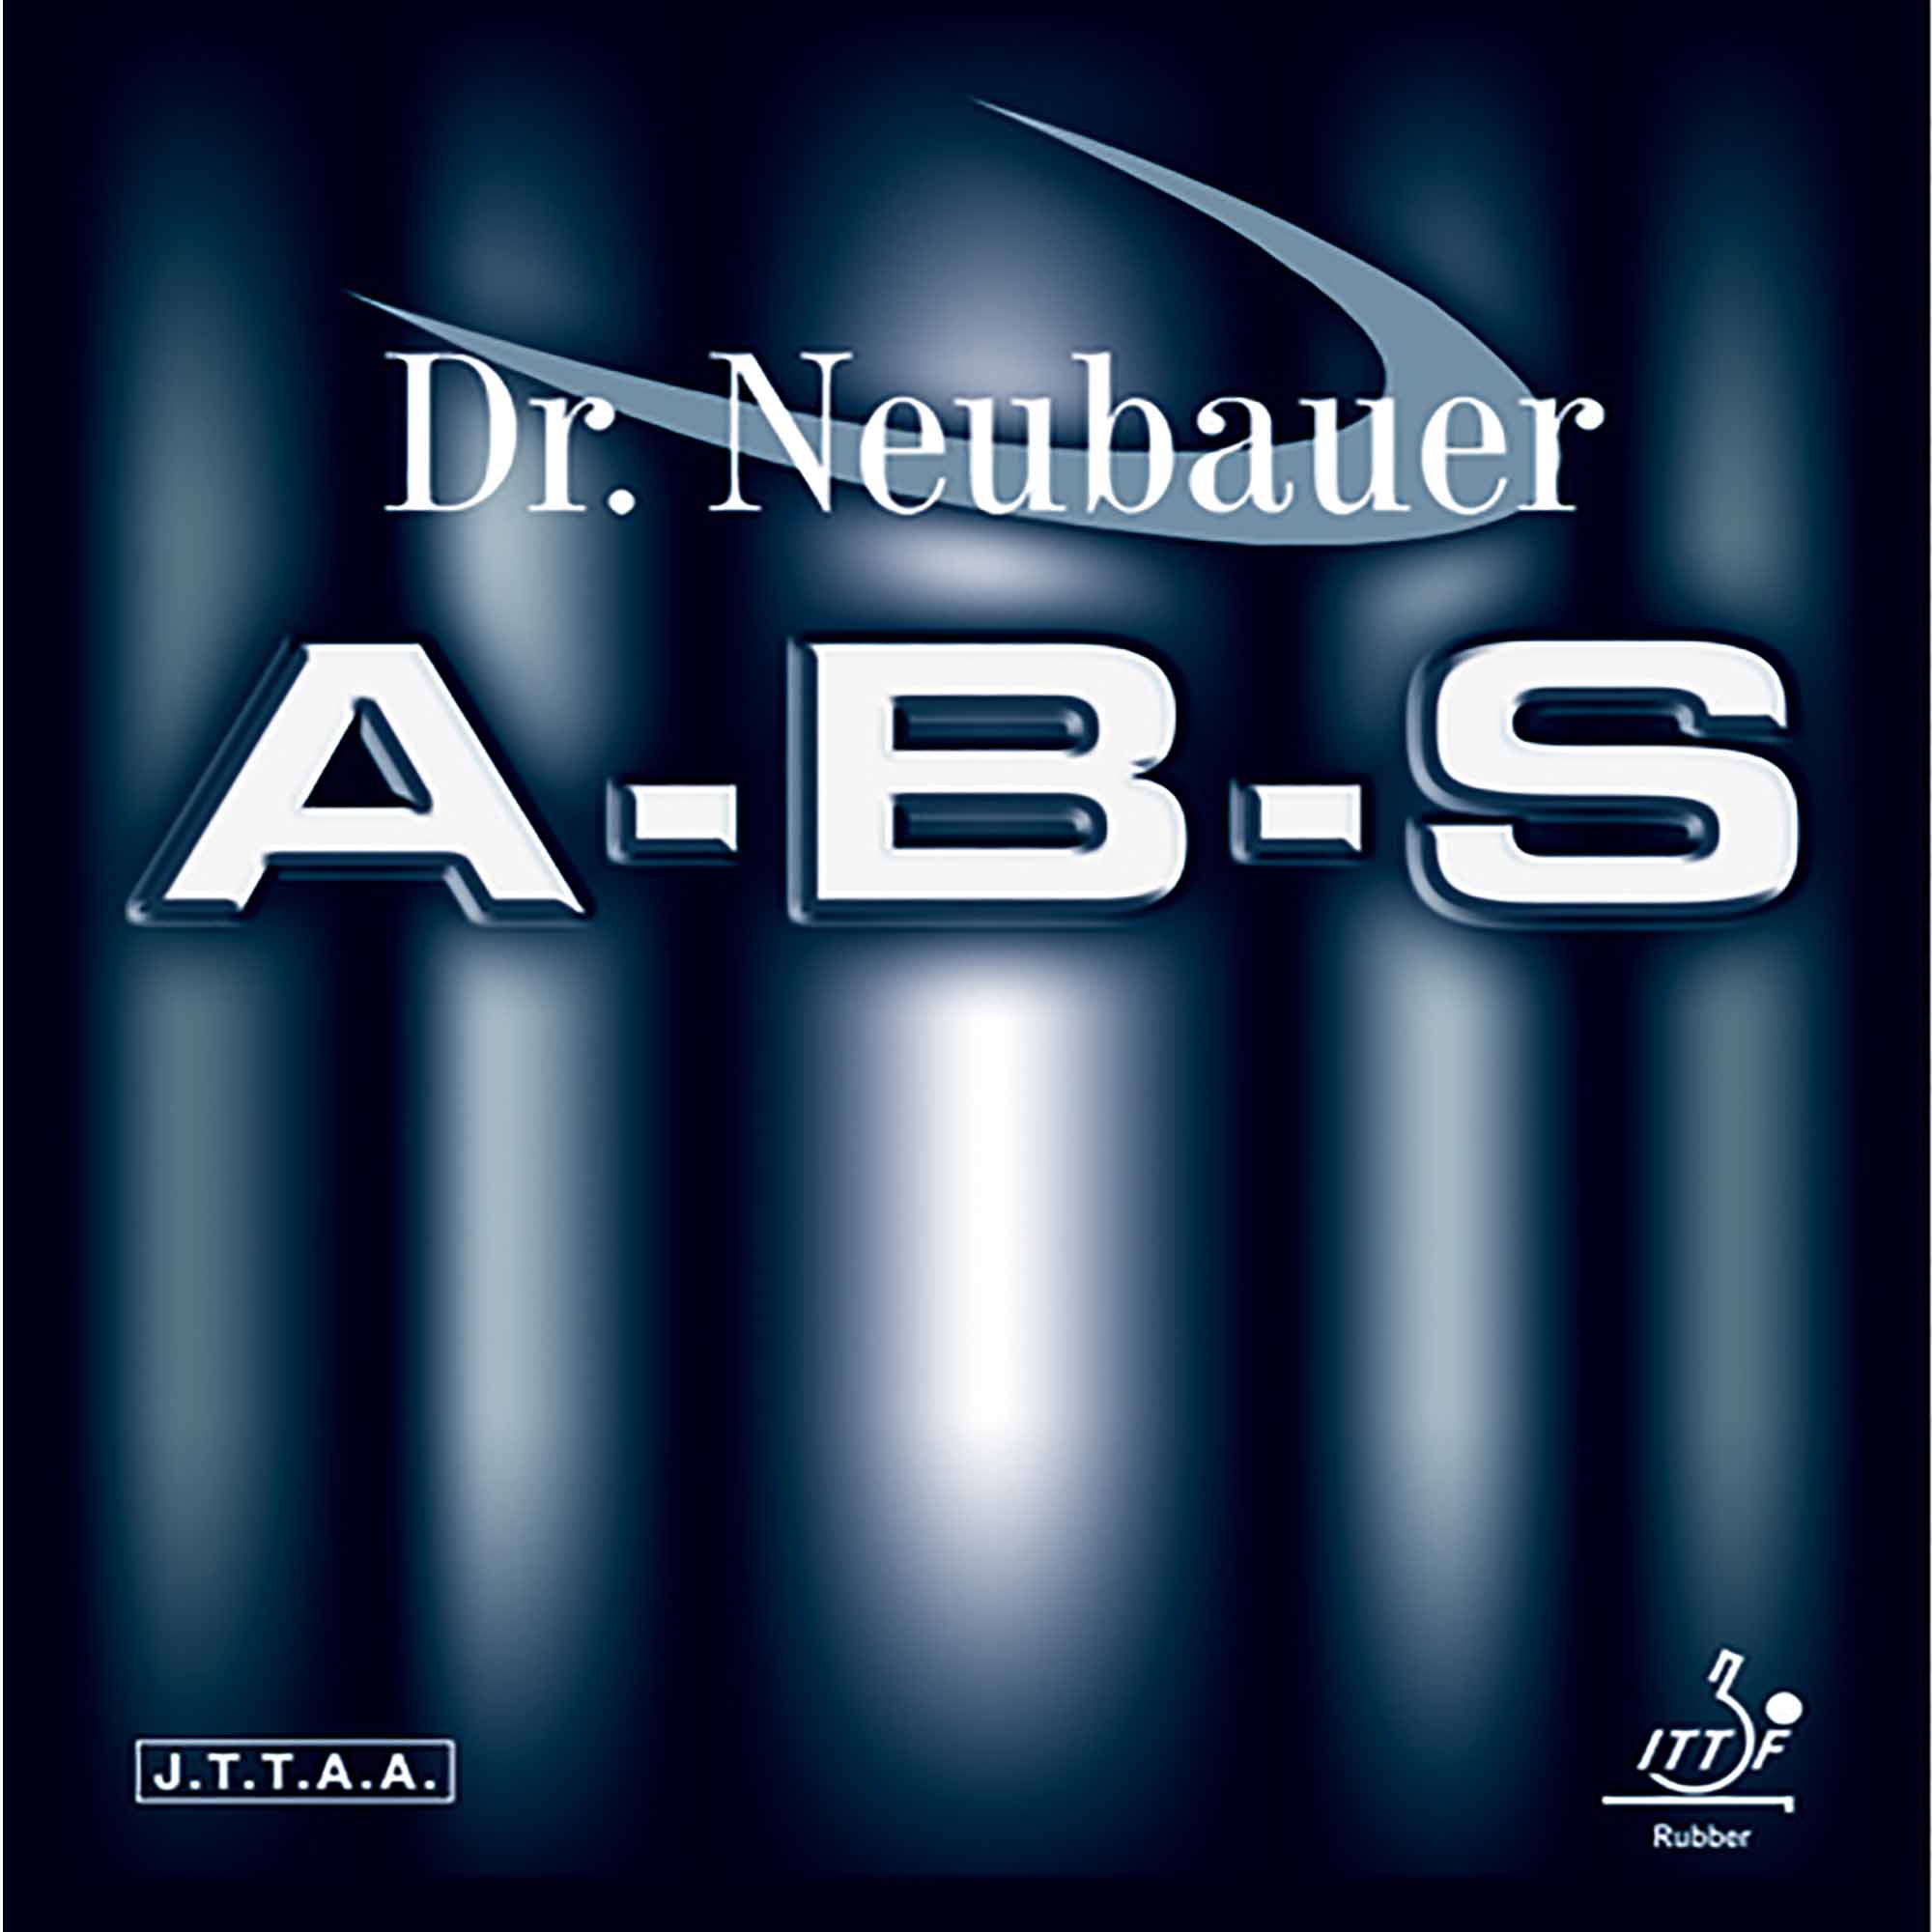 Dr. Neubauer Rubber A-B-S